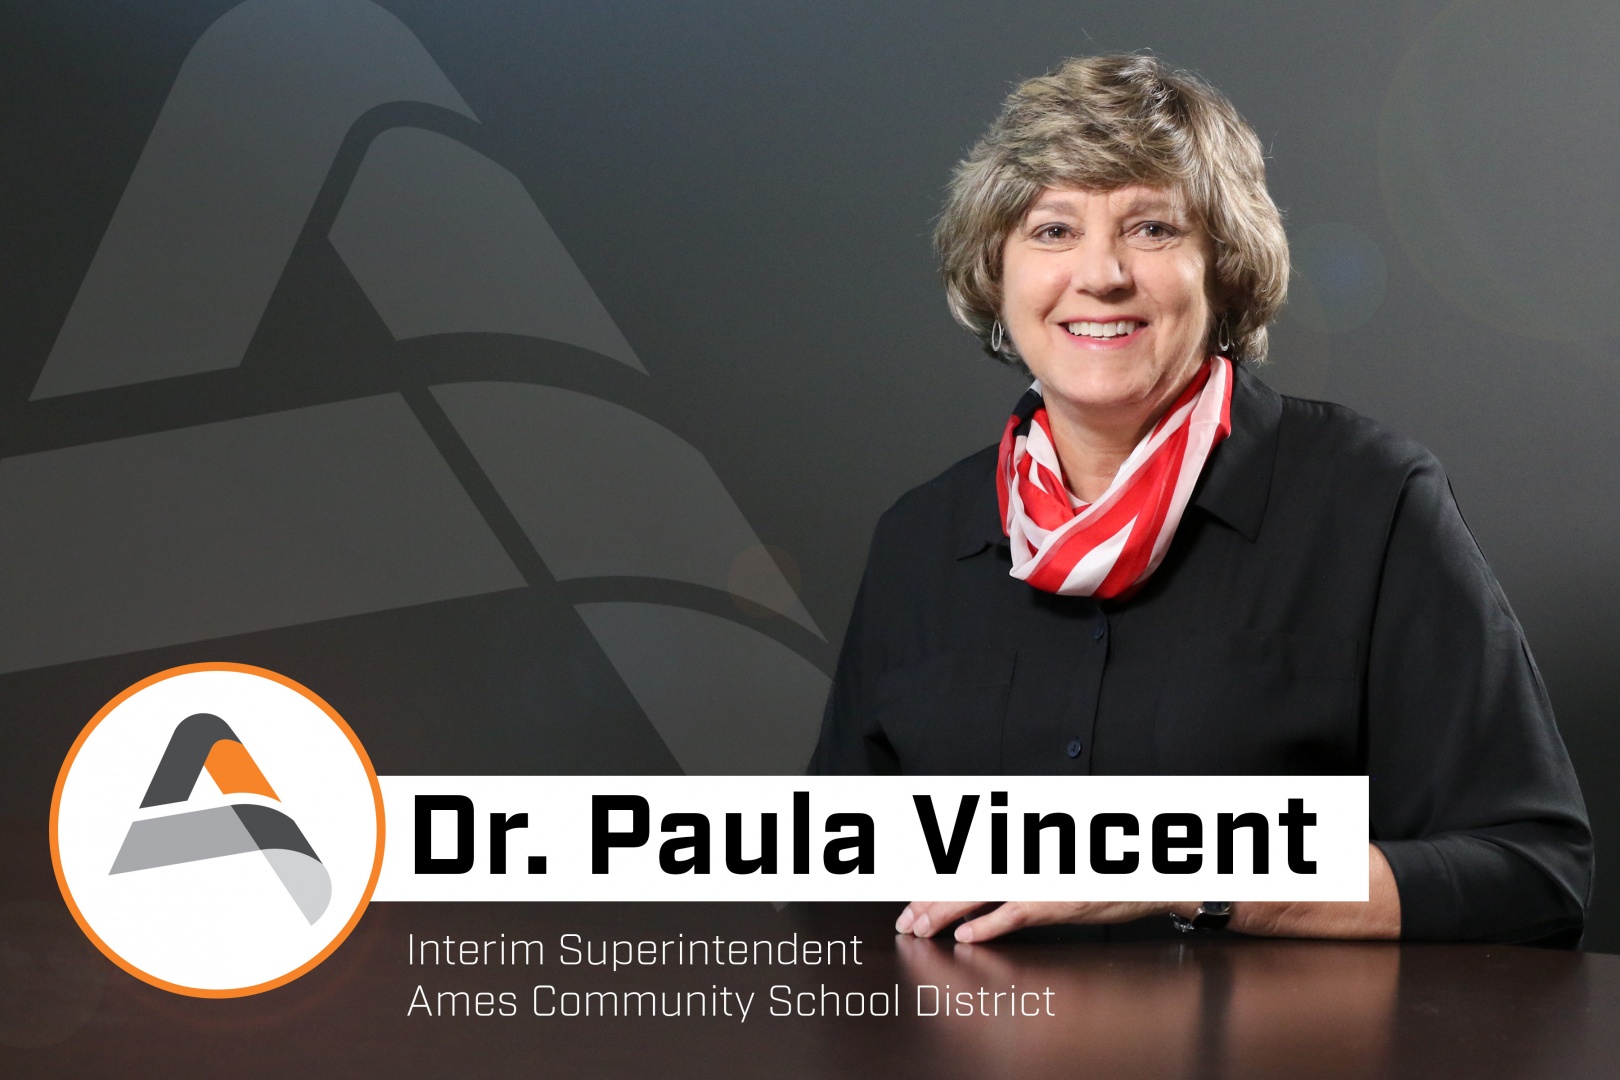 Dr. Paula Vincent